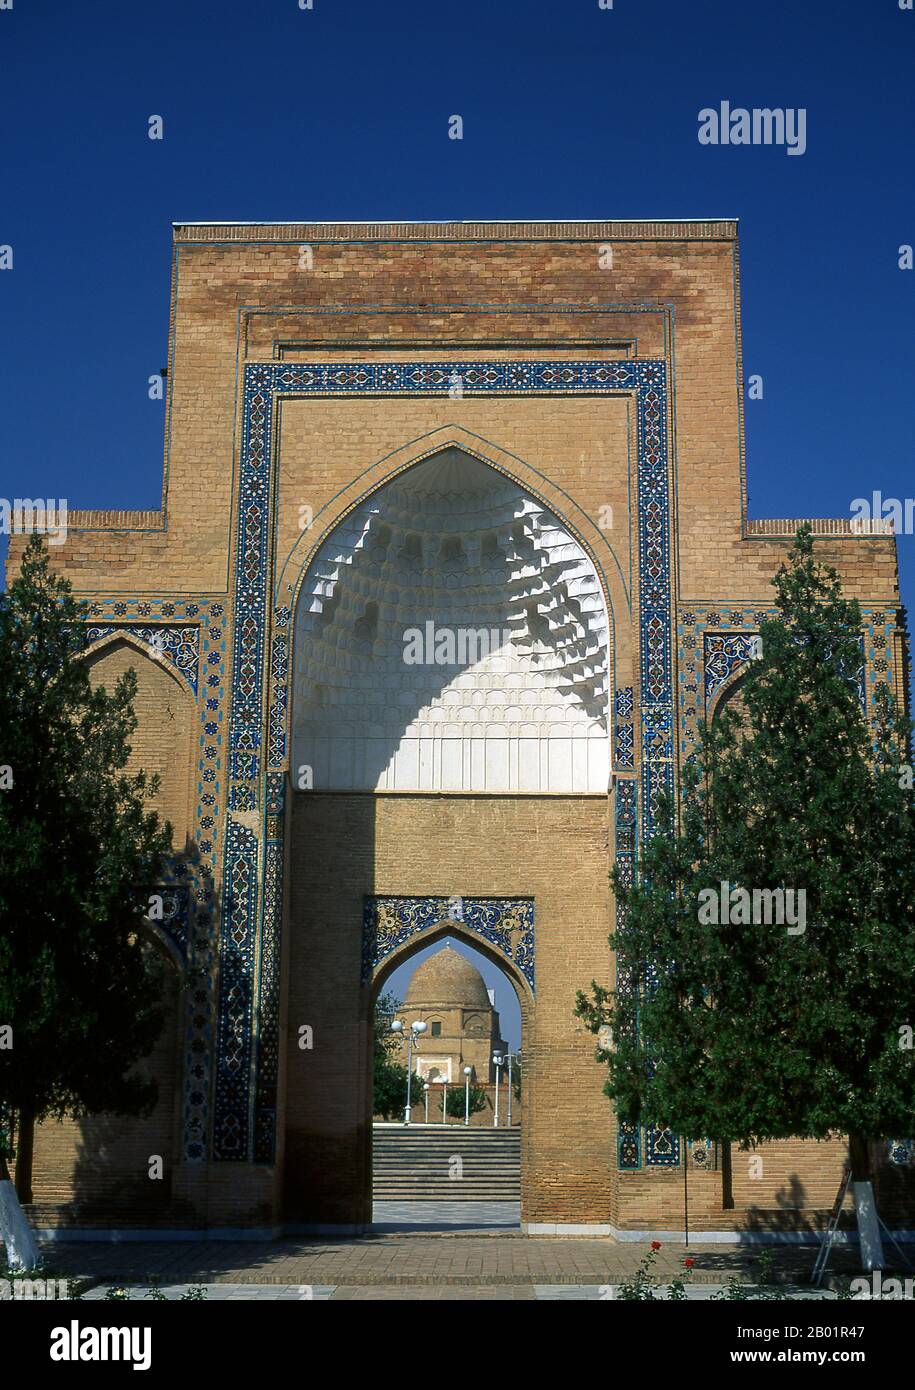 Uzbekistan: Ingresso al Mausoleo Gur-e Amir con il mausoleo sullo sfondo, Samarcanda. Il Gūr-e Amīr o Guri Amir è il mausoleo del conquistatore asiatico Tamerlano (noto anche come Tamerlano) a Samarcanda, Uzbekistan. Gur-e Amir è persiano per "Tomba del Re". Occupa un posto importante nella storia dell'architettura persiana come precursore e modello per le successive grandi tombe dell'architettura moghul, tra cui la tomba di Humayun a Delhi e il Taj Mahal ad Agra, costruito dai discendenti di Tamerlano, la dinastia moghul regnante dell'India settentrionale. E' stato pesantemente restaurato. Foto Stock